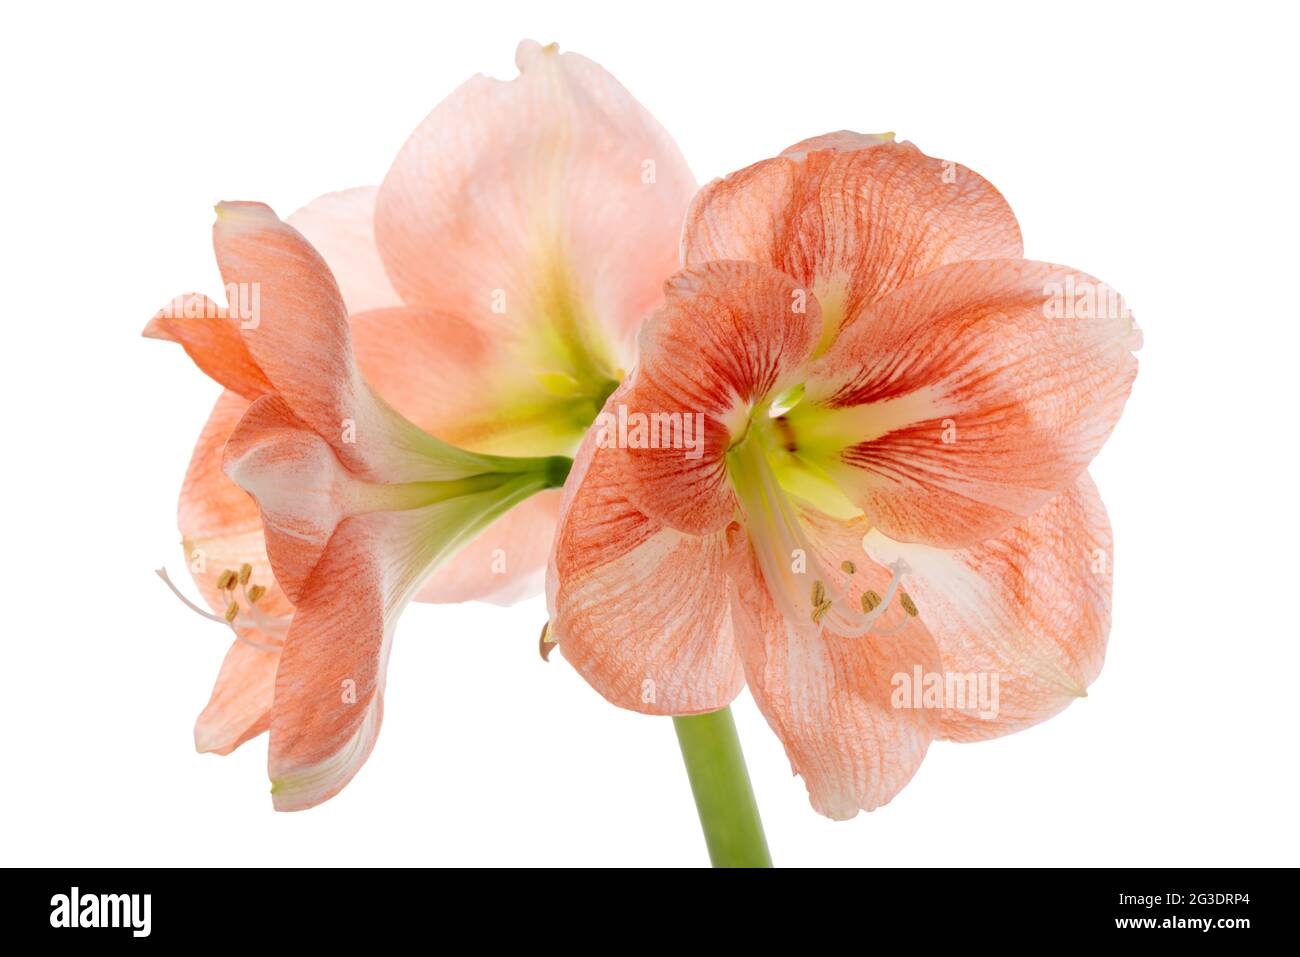 Beautiful orange Amaryllis flower or Hippeastrum isolated on white background, close up Stock Photo